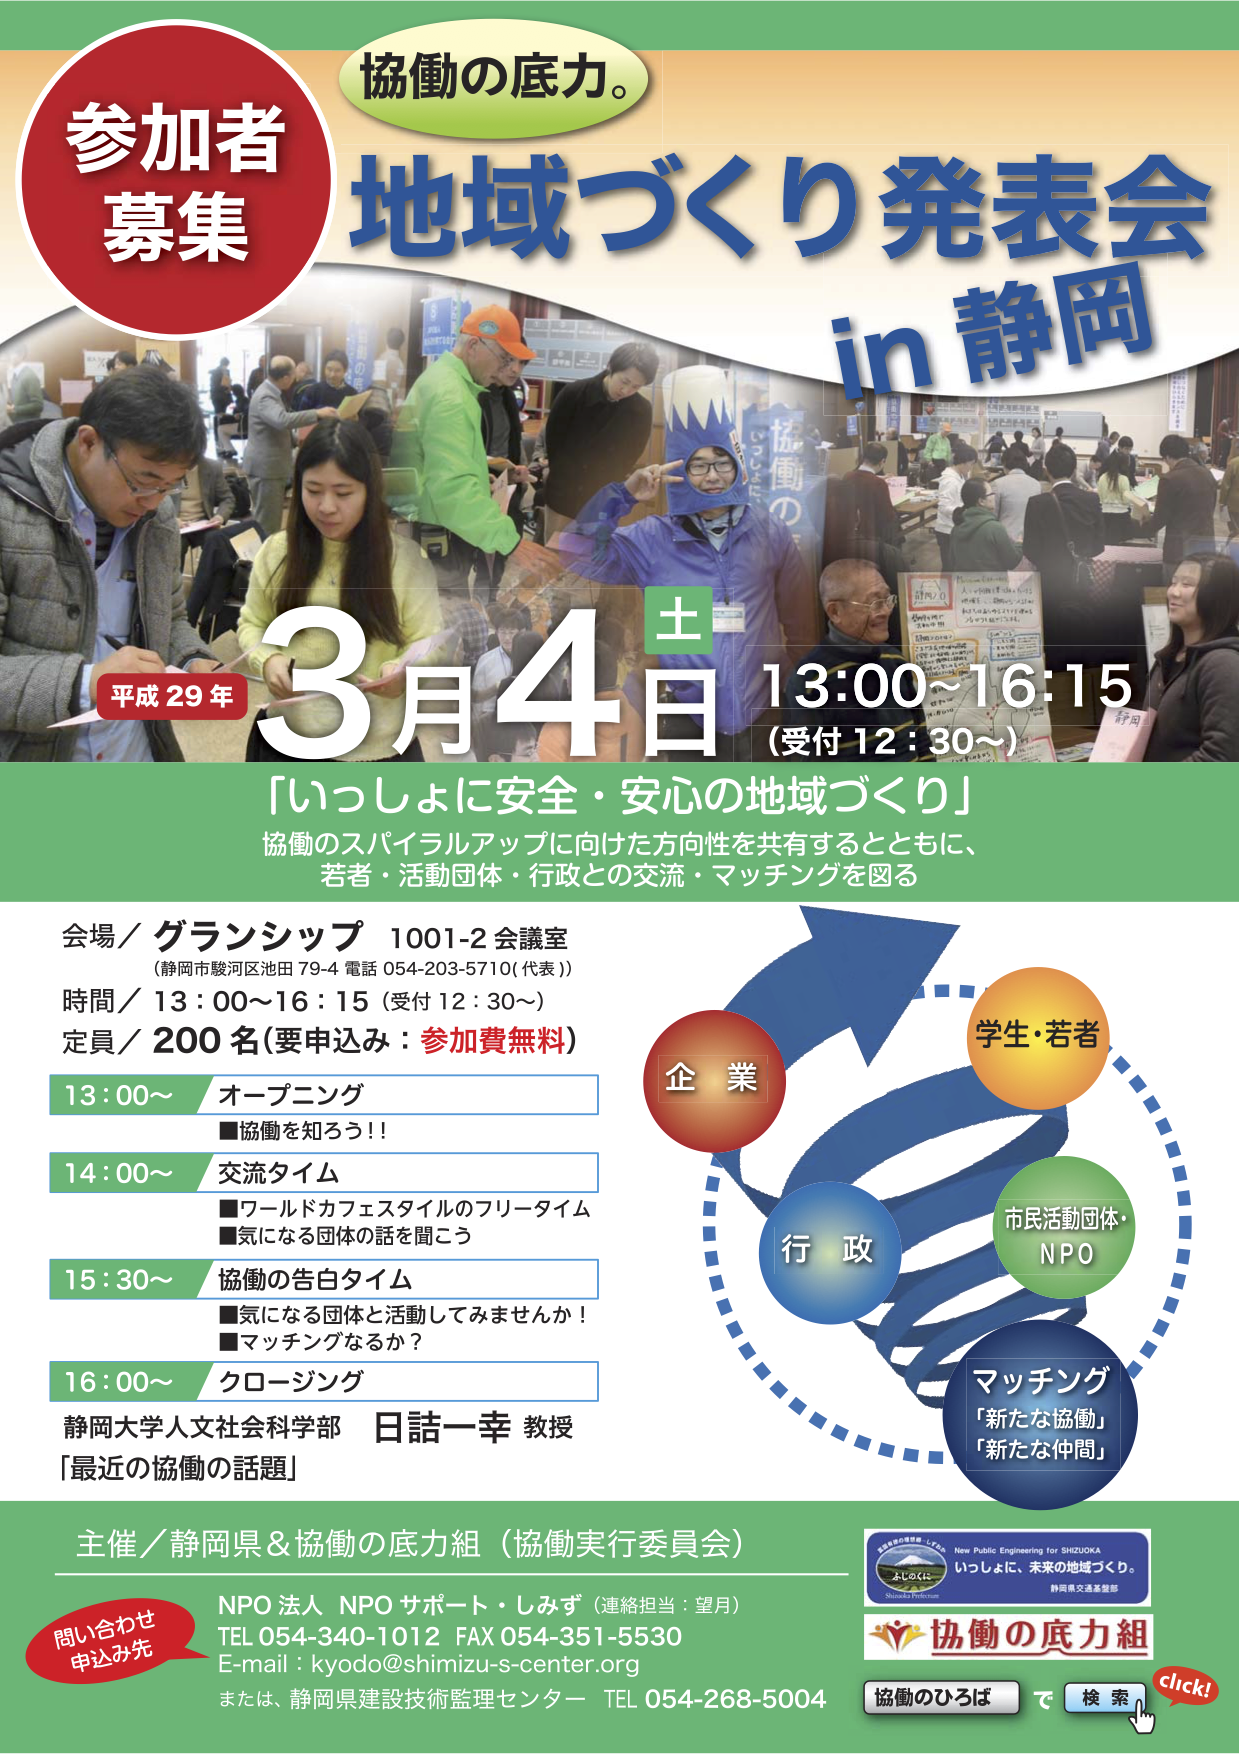 静岡県 平成28年度「協働の底力。地域づくり発表会」に登壇します